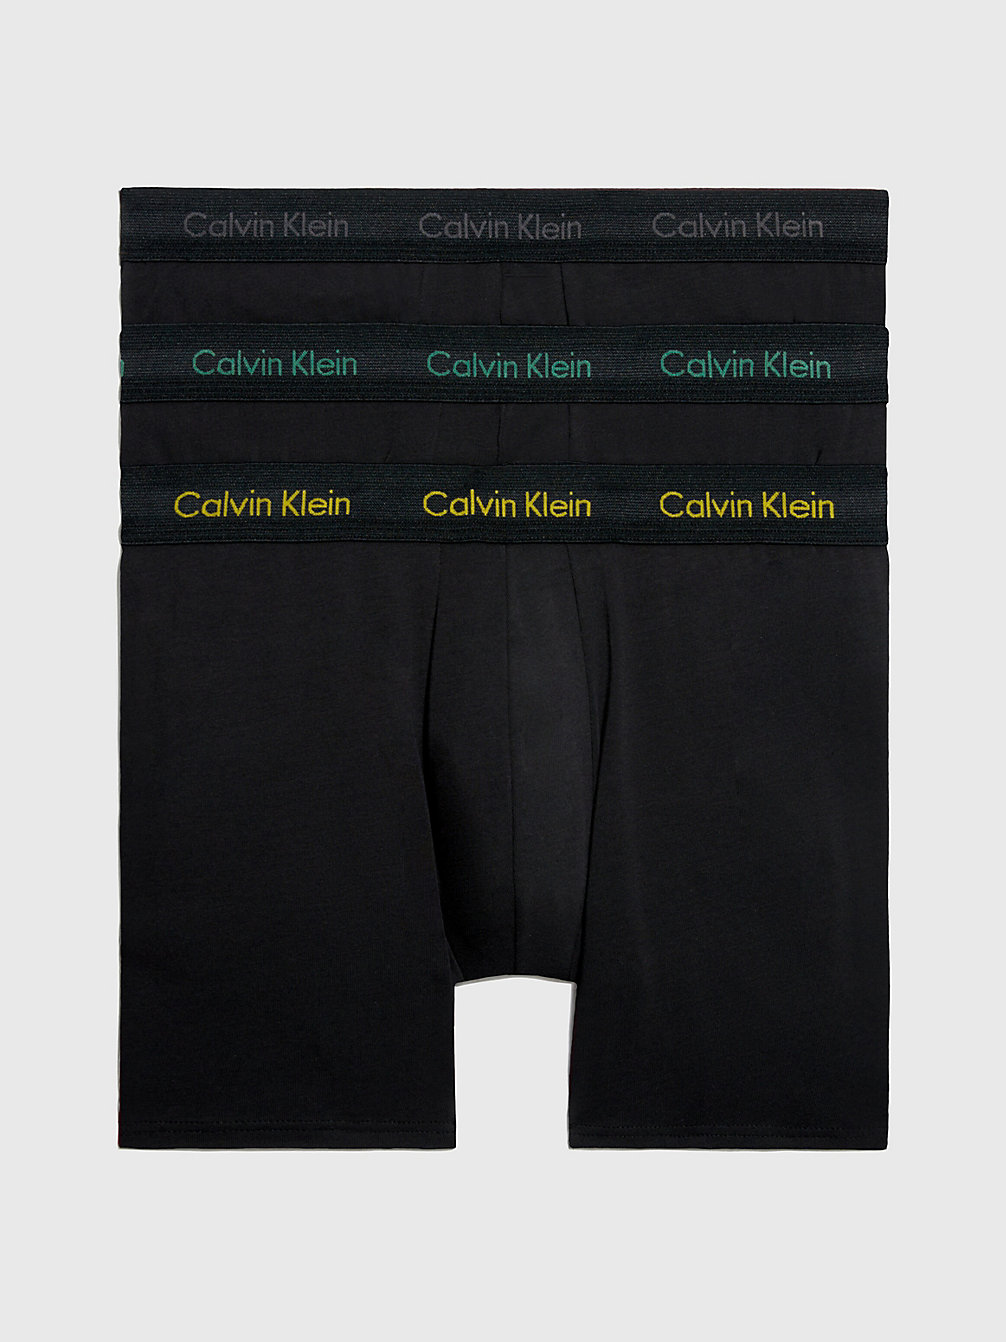 B-CHRCL HTHR, MRNGSD YW, FLG GRN LG 3er-Pack Boxershorts - Cotton Stretch undefined Herren Calvin Klein